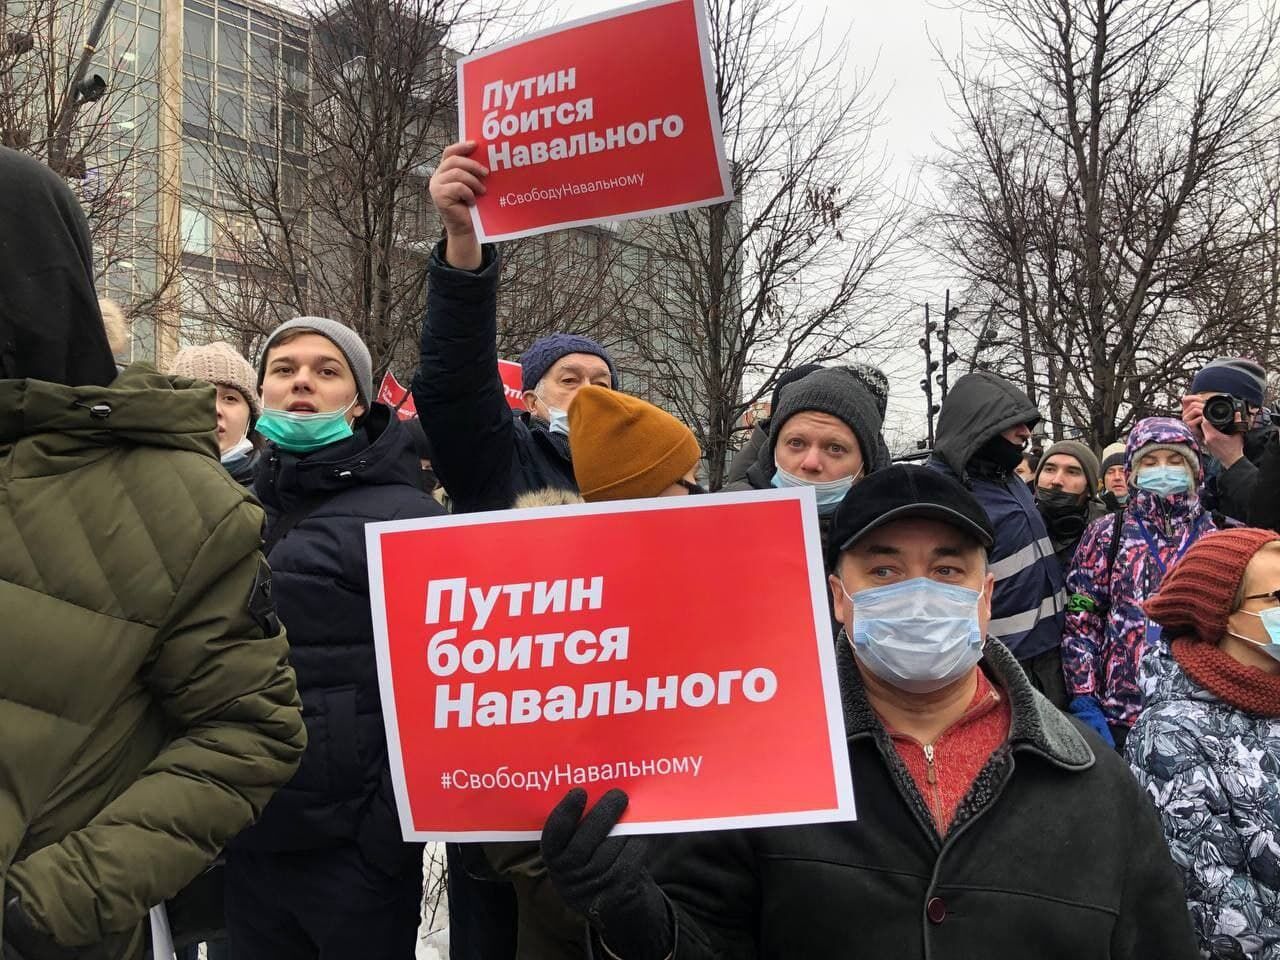 مسکو - ایرنا- به دنبال فراخوان مخالفان دولت روسیه برای اعتراض به دستگیری...